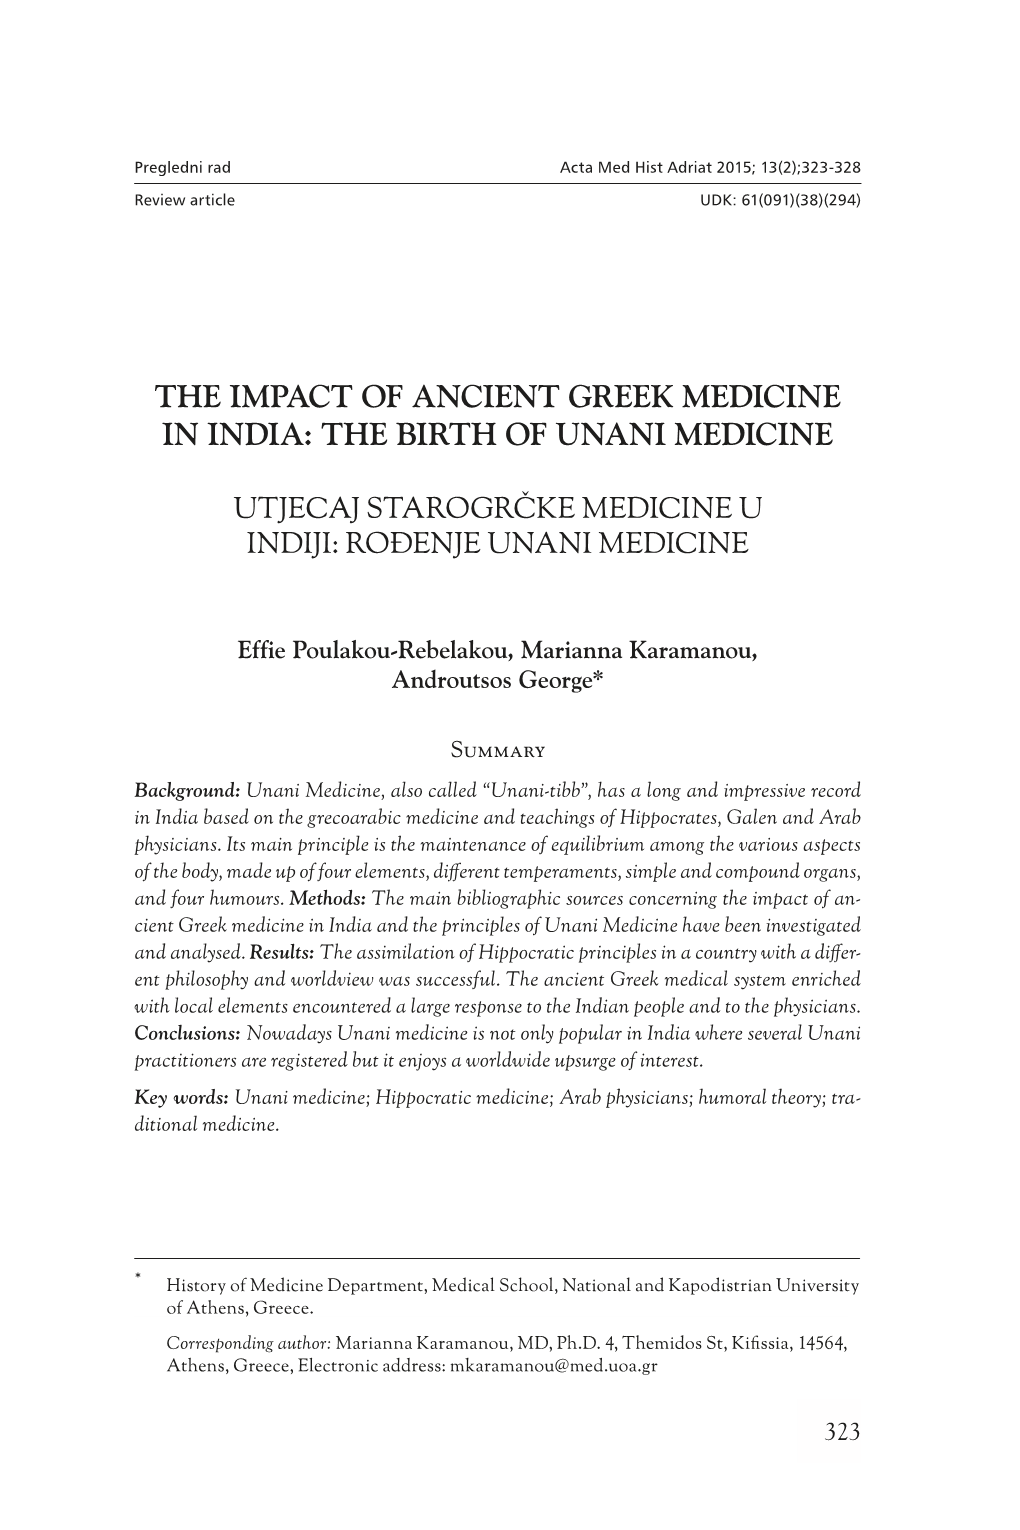 The Birth of Unani Medicine